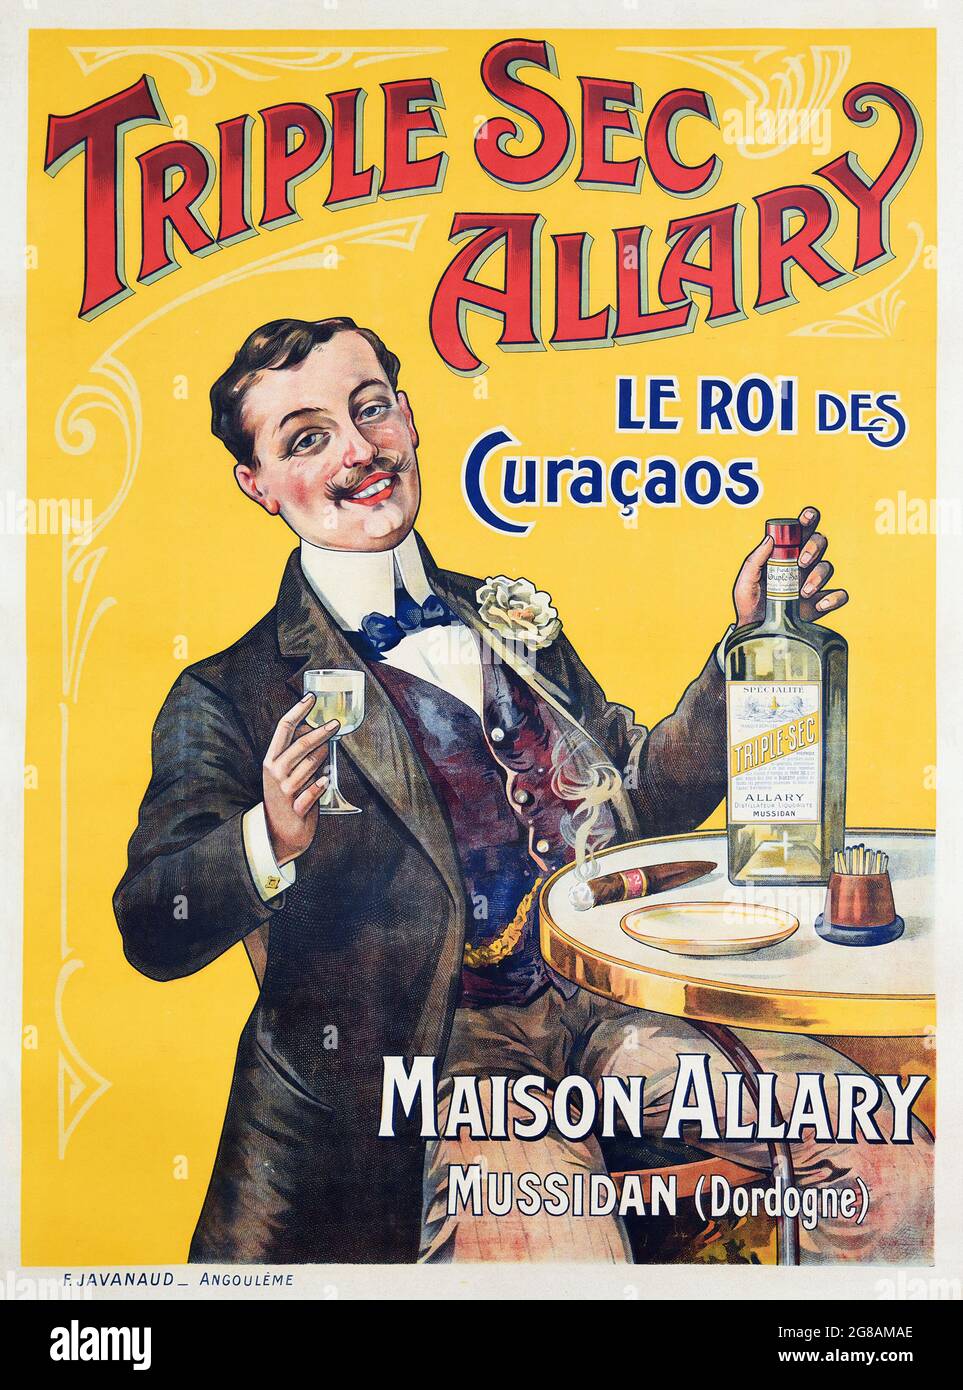 Vintage anuncio para Triple Sec Allary. Alcohol publicidad. 'Le Roi des Curacaos'. Maison Allary Mussidan (Dordoña). Hombre sentado en una mesa. Foto de stock